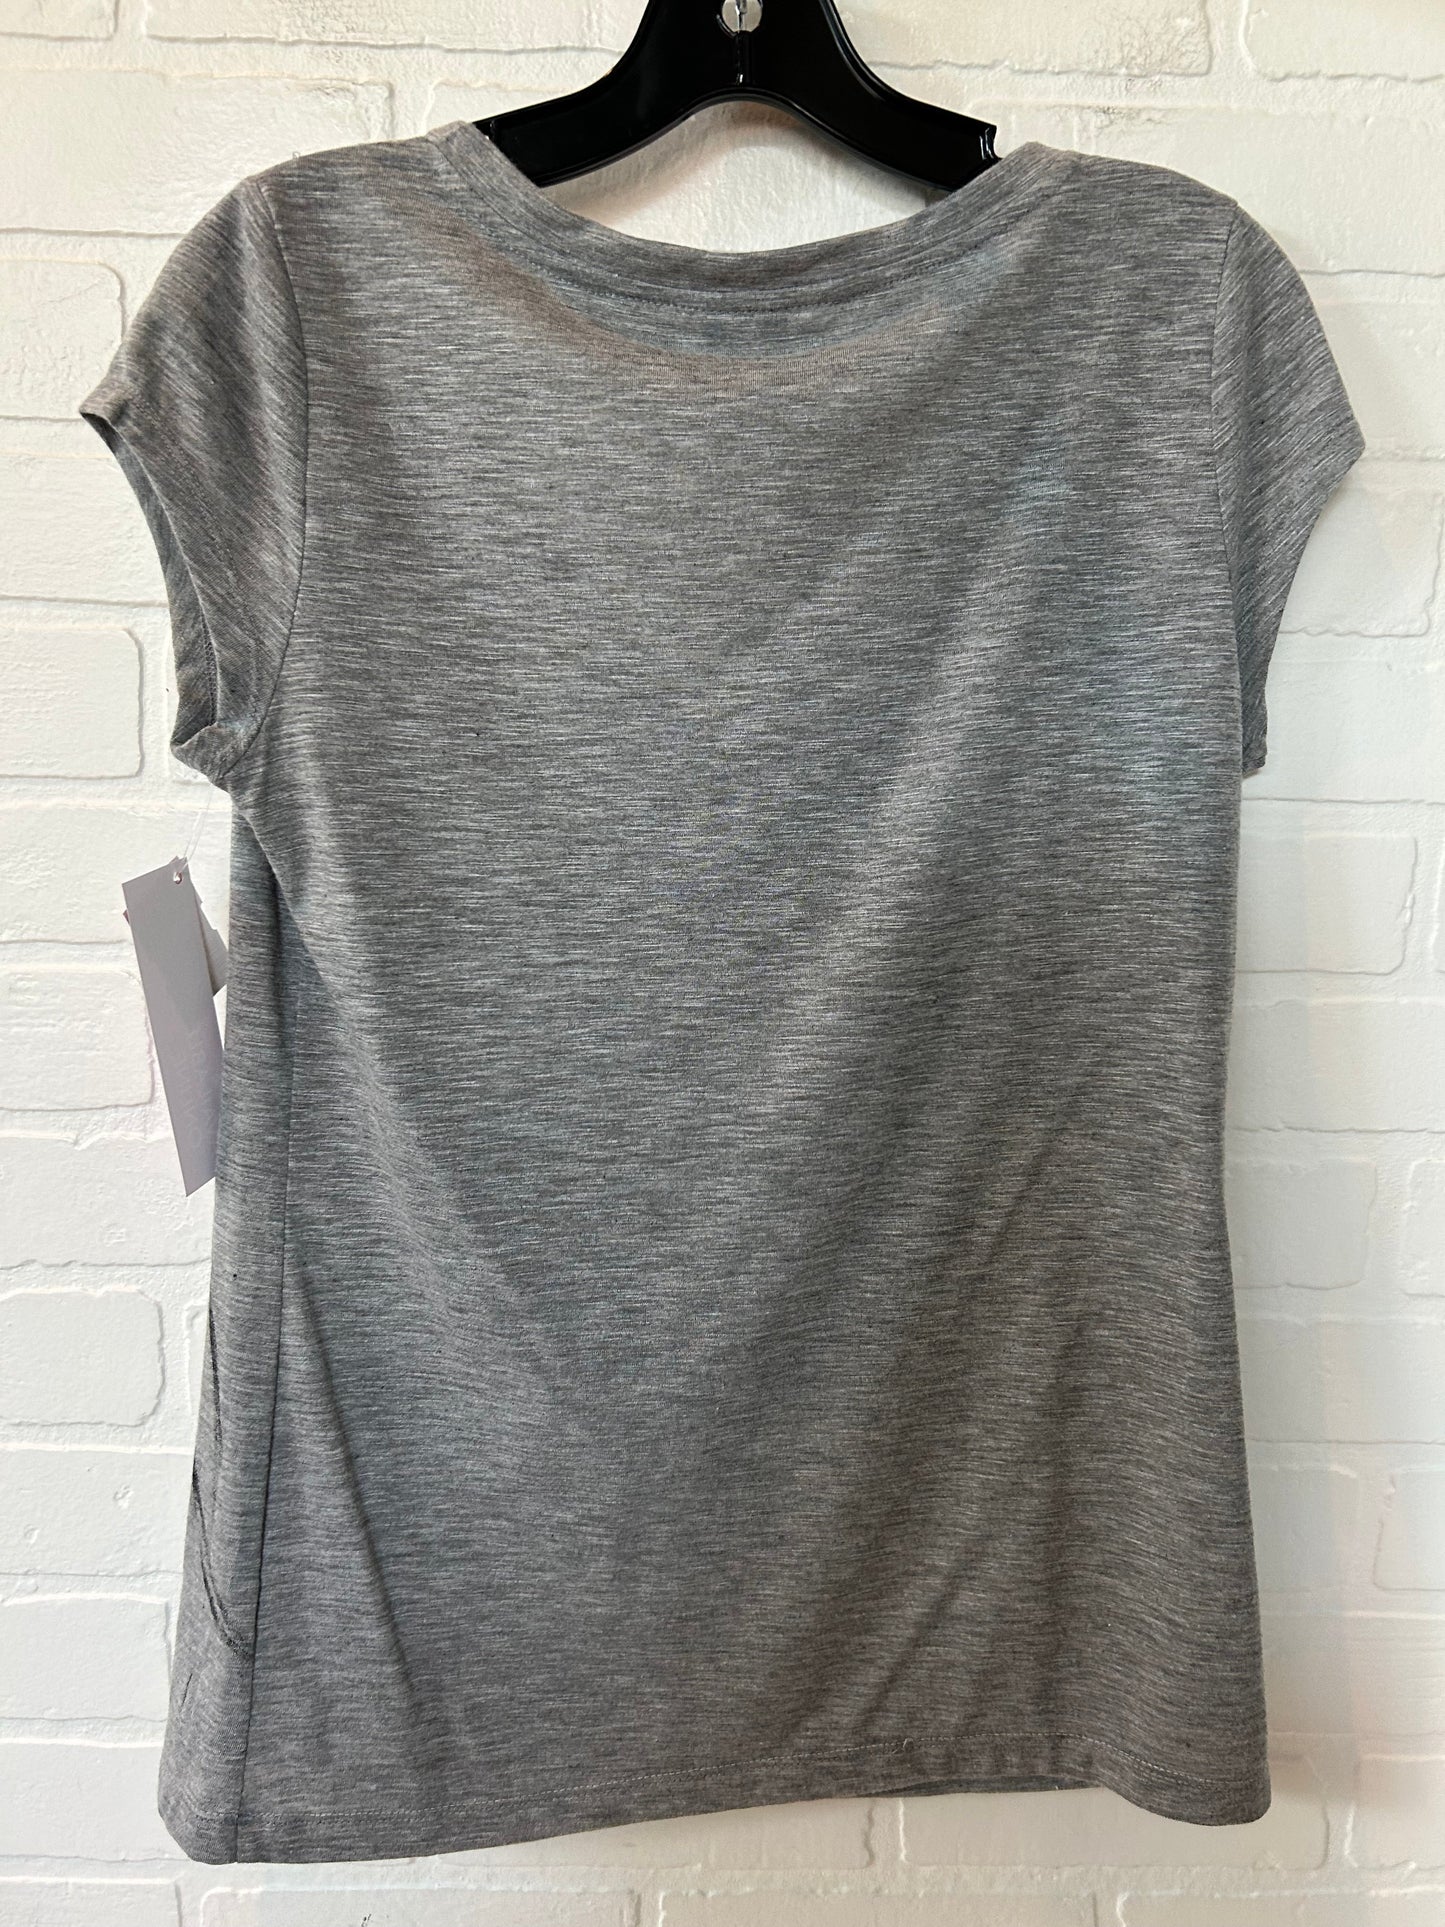 Grey Top Short Sleeve Lc Lauren Conrad, Size S